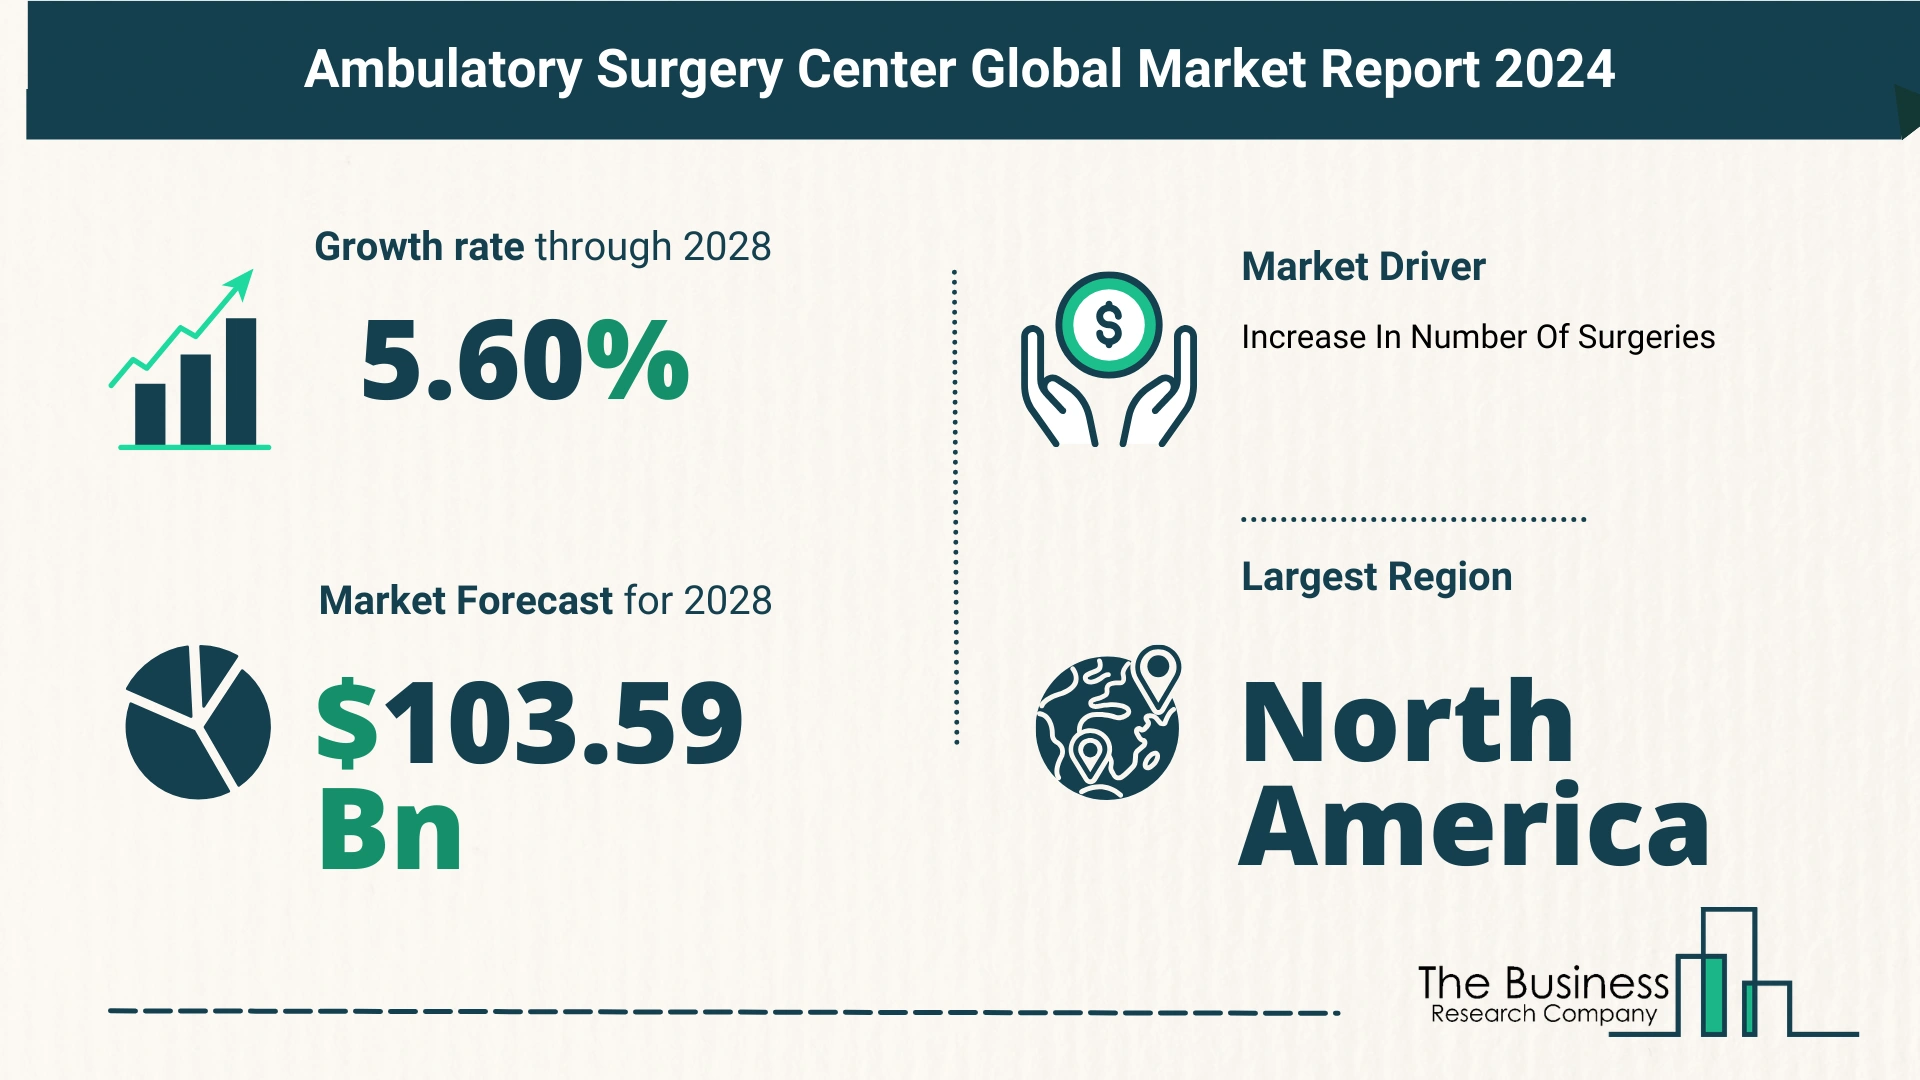 Global Ambulatory Surgery Center Market